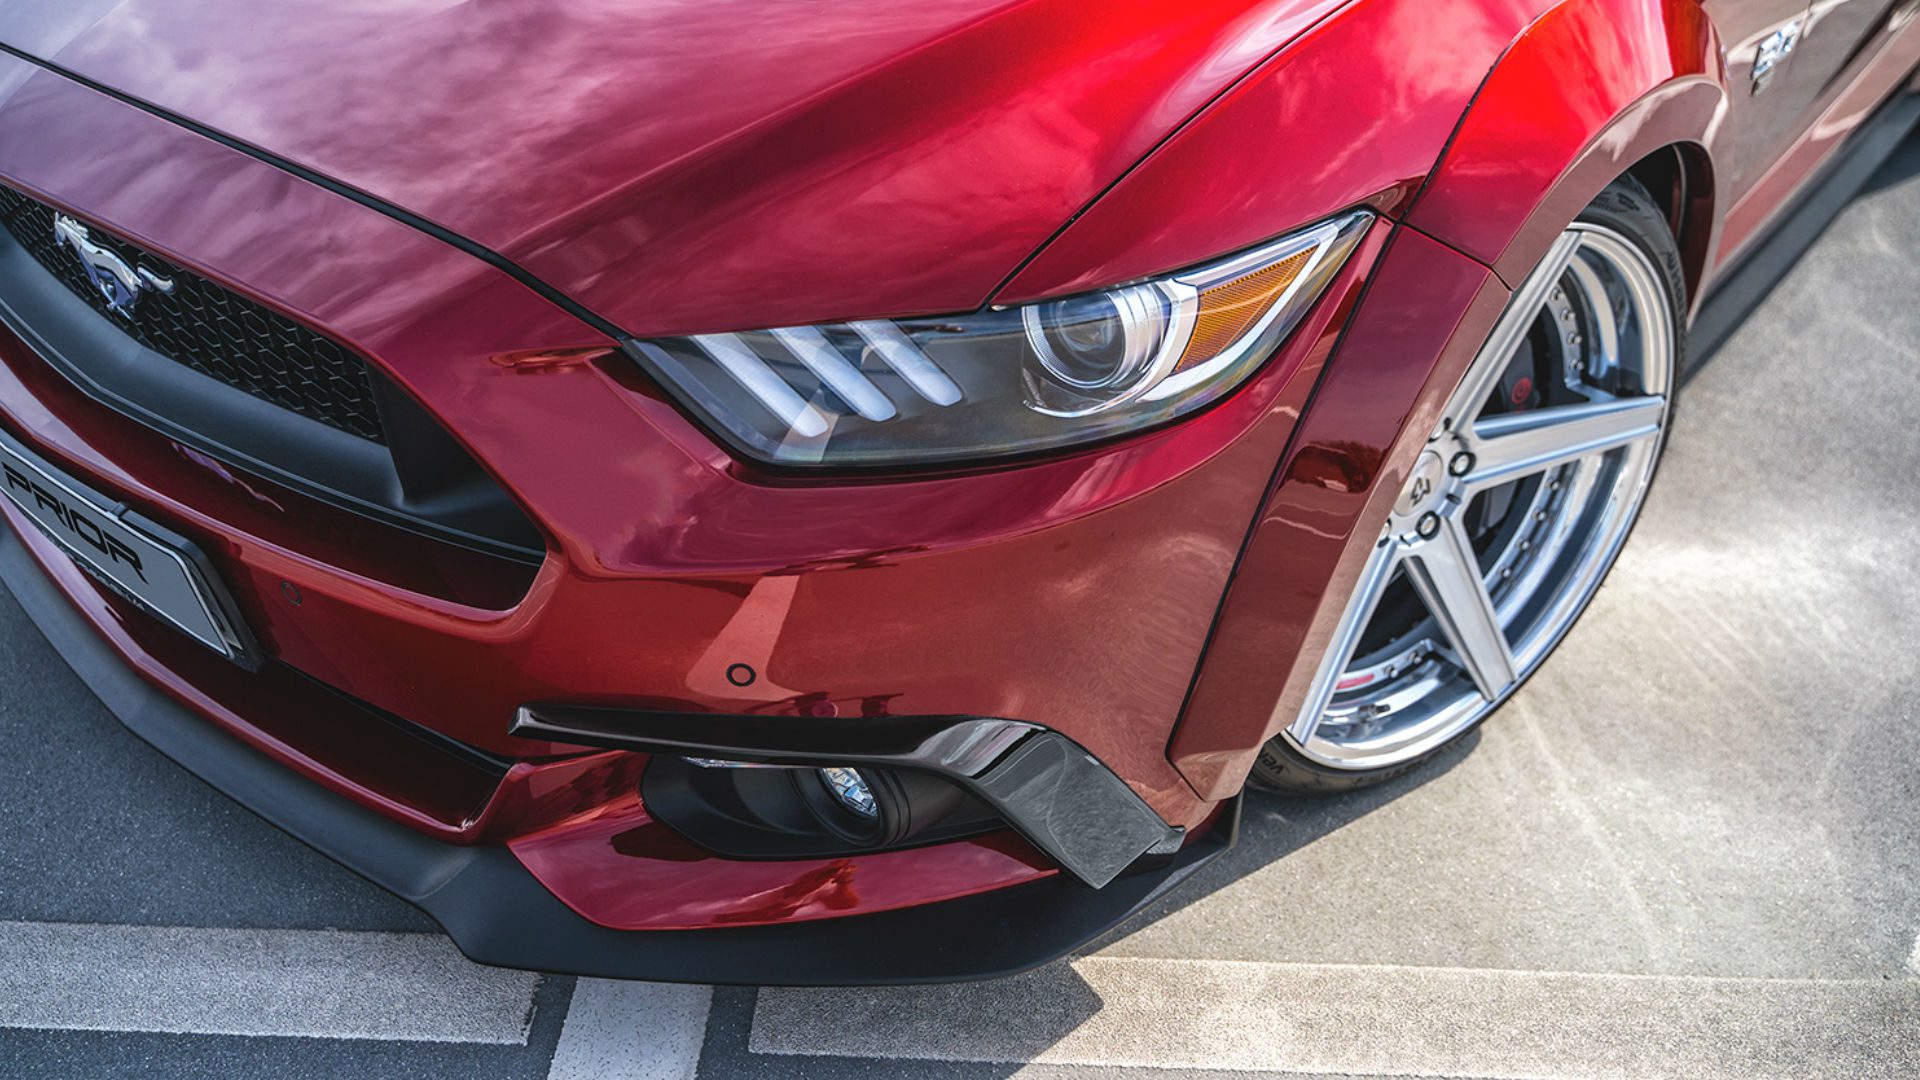 PD Lufteinlassrahmen für die originale Frontstoßstange für Ford Mustang VI 2015+